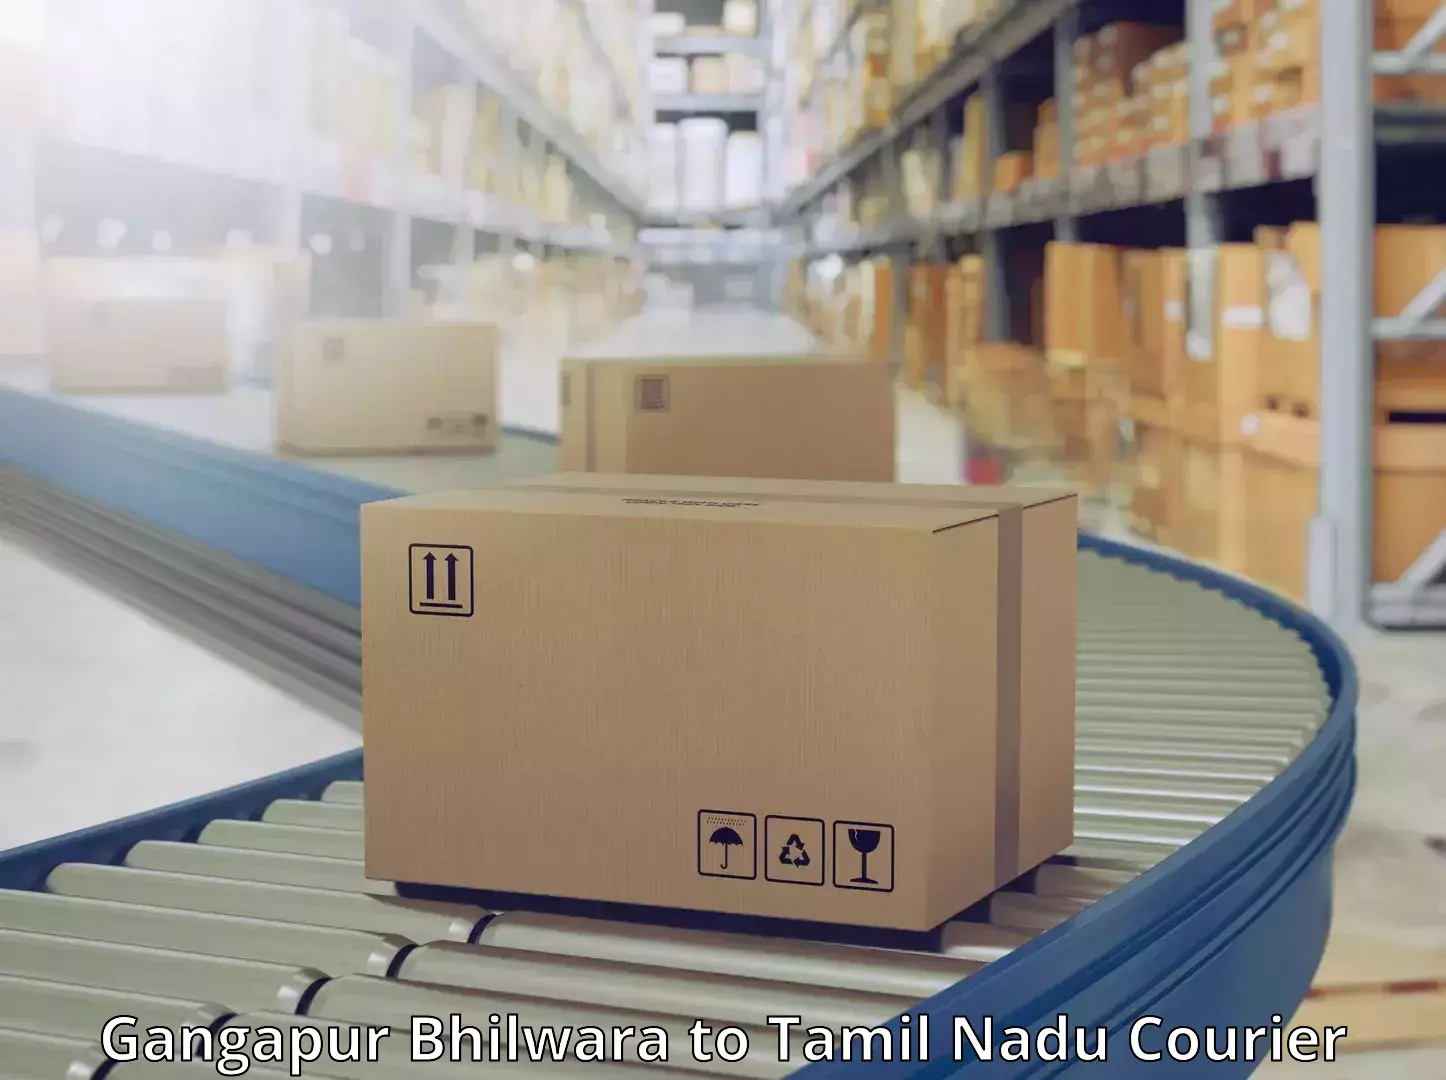 Modern delivery methods Gangapur Bhilwara to Tamil Nadu